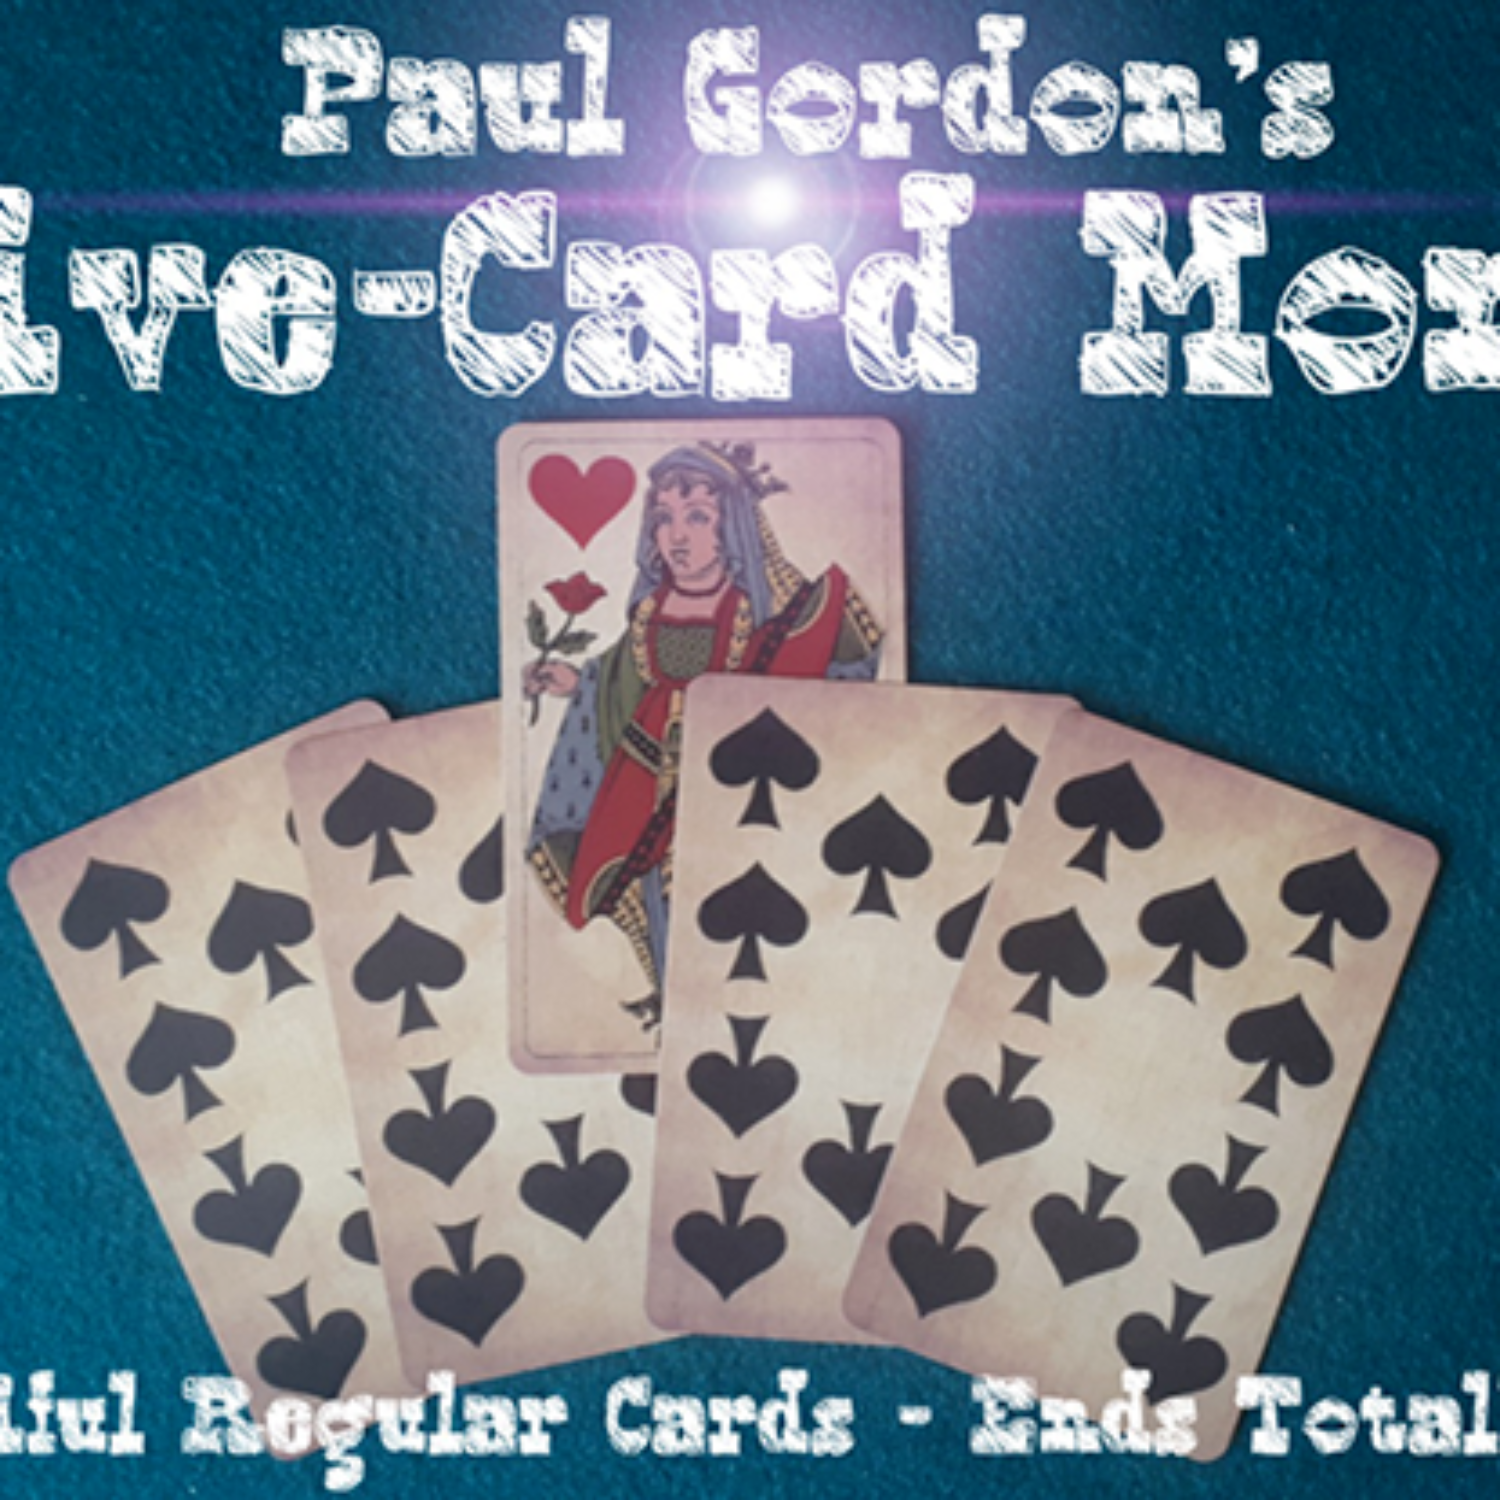 [파이브카드몬테] FIVE CARD MONTE by Paul Gordon 관객의 승리확률이 80%인 확률게임에서 항상 이길 수 있습니다.